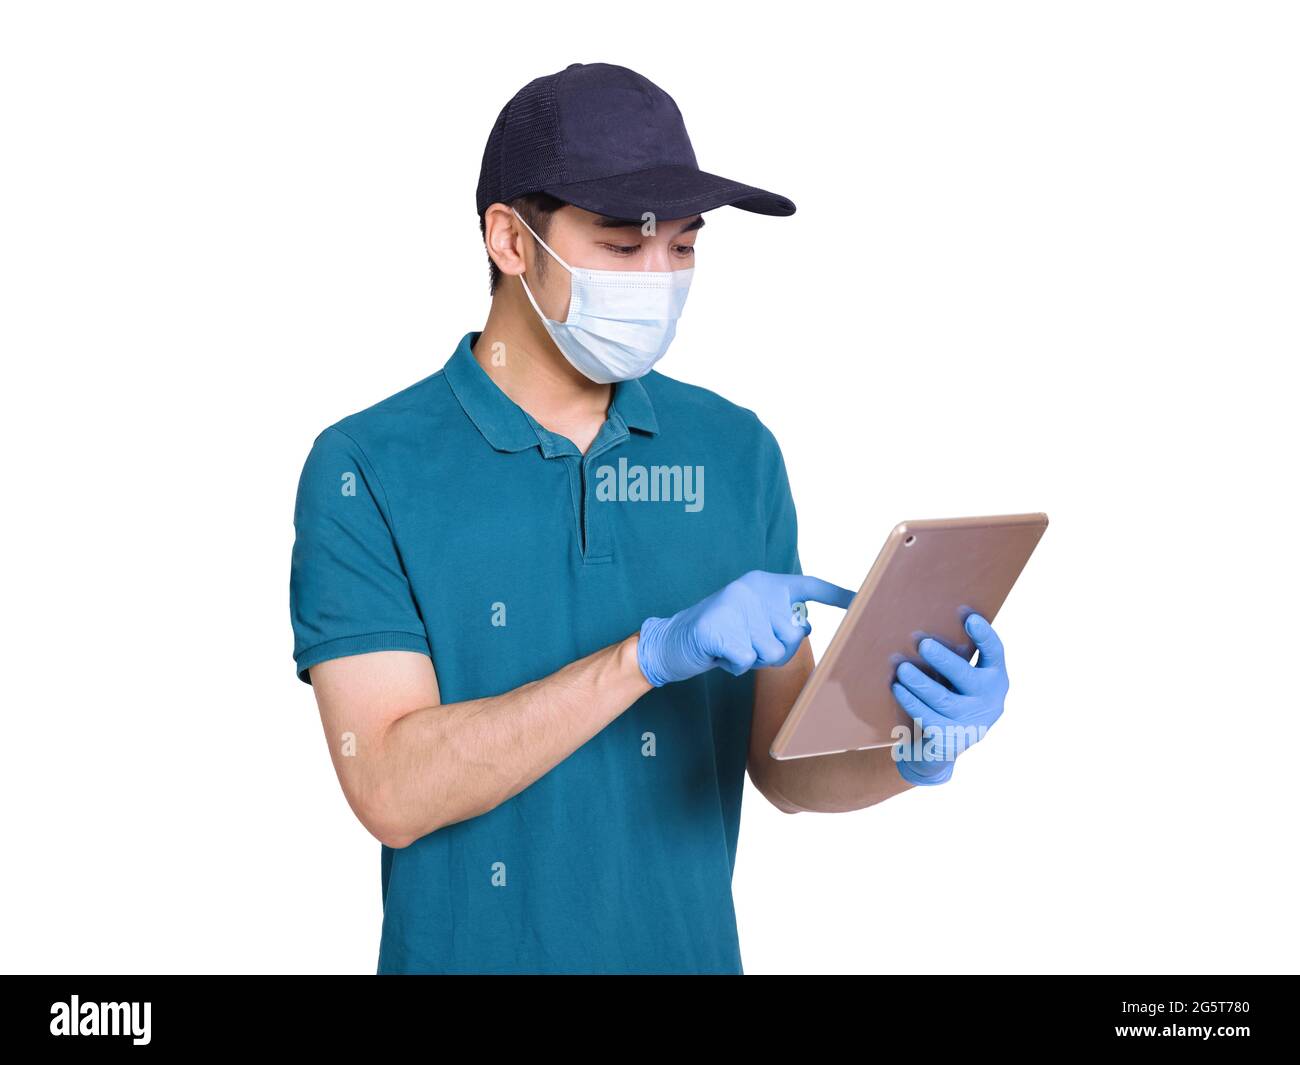 Junge Kuriere, die während der covid-19-Epidemie arbeiten, tragen zum Schutz blaue Kleidung, Hüte, Masken und Handschuhe Stockfoto